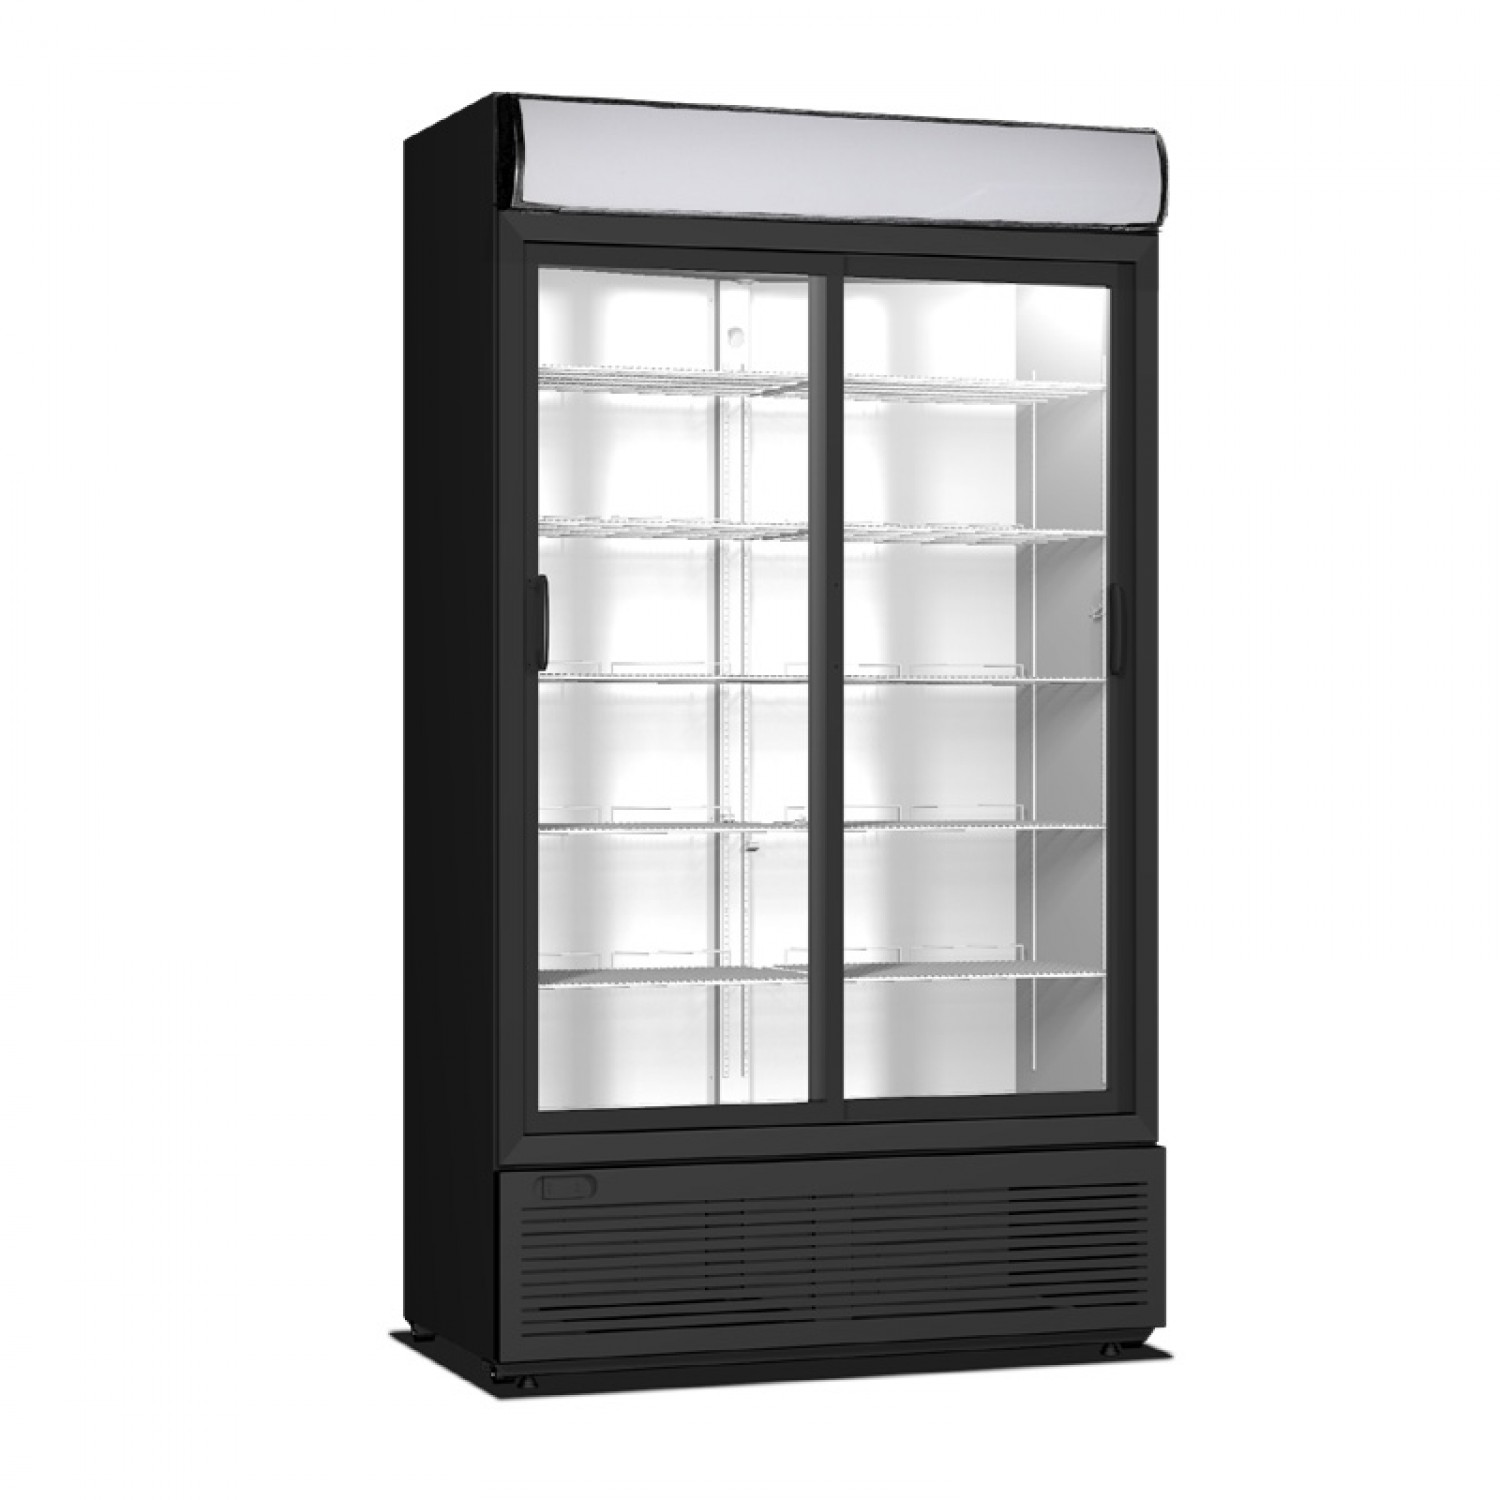 Ψυγείο αναψυκτικών Crystal CRS930 με συρόμενες πόρτες